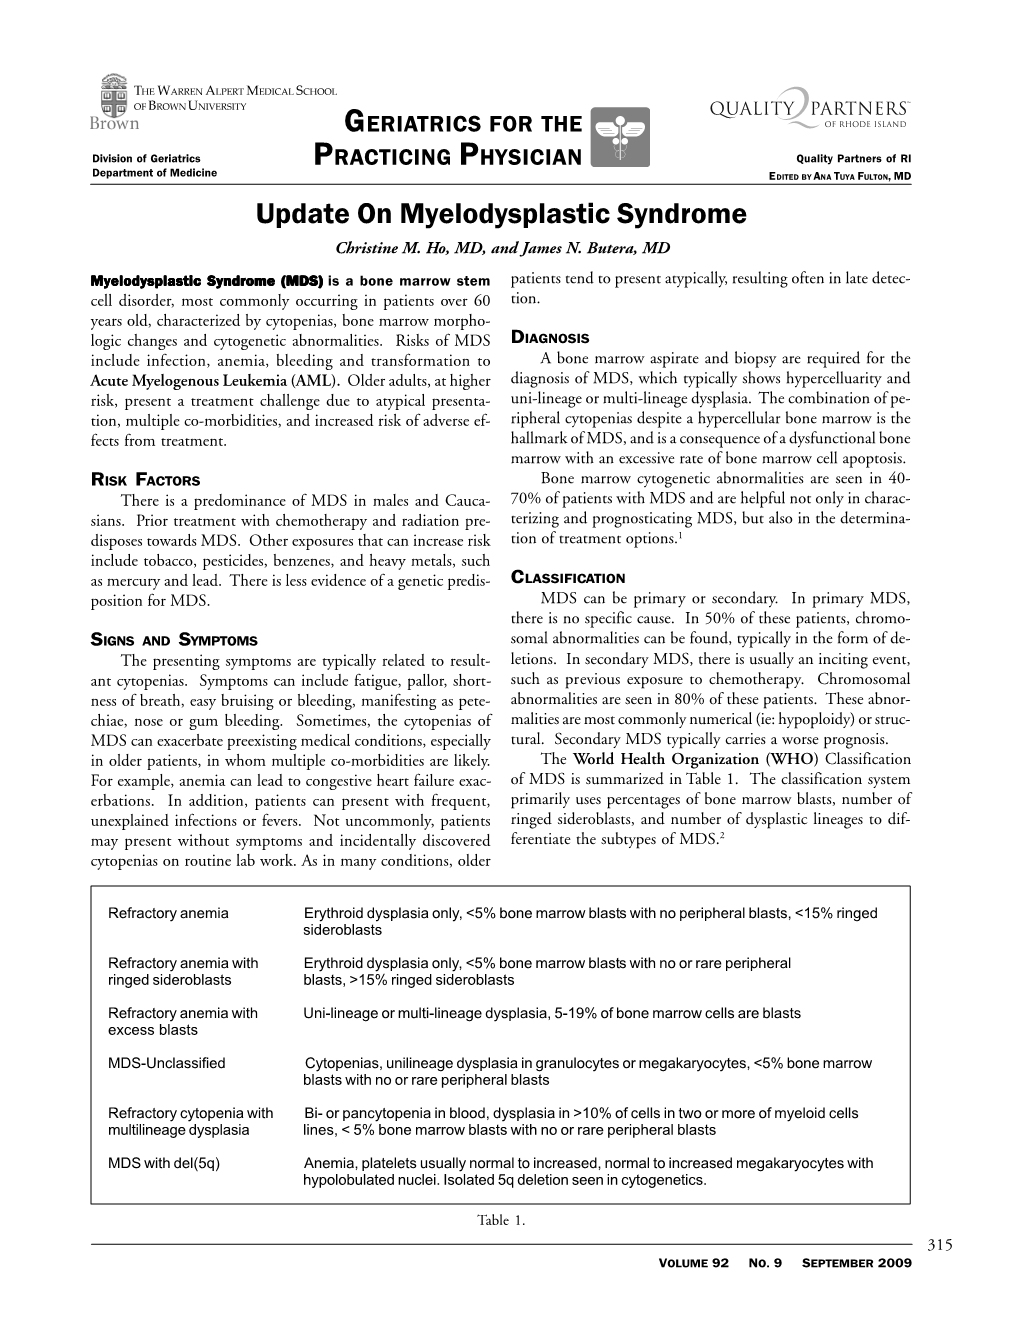 Update on Myelodysplastic Syndrome Christine M